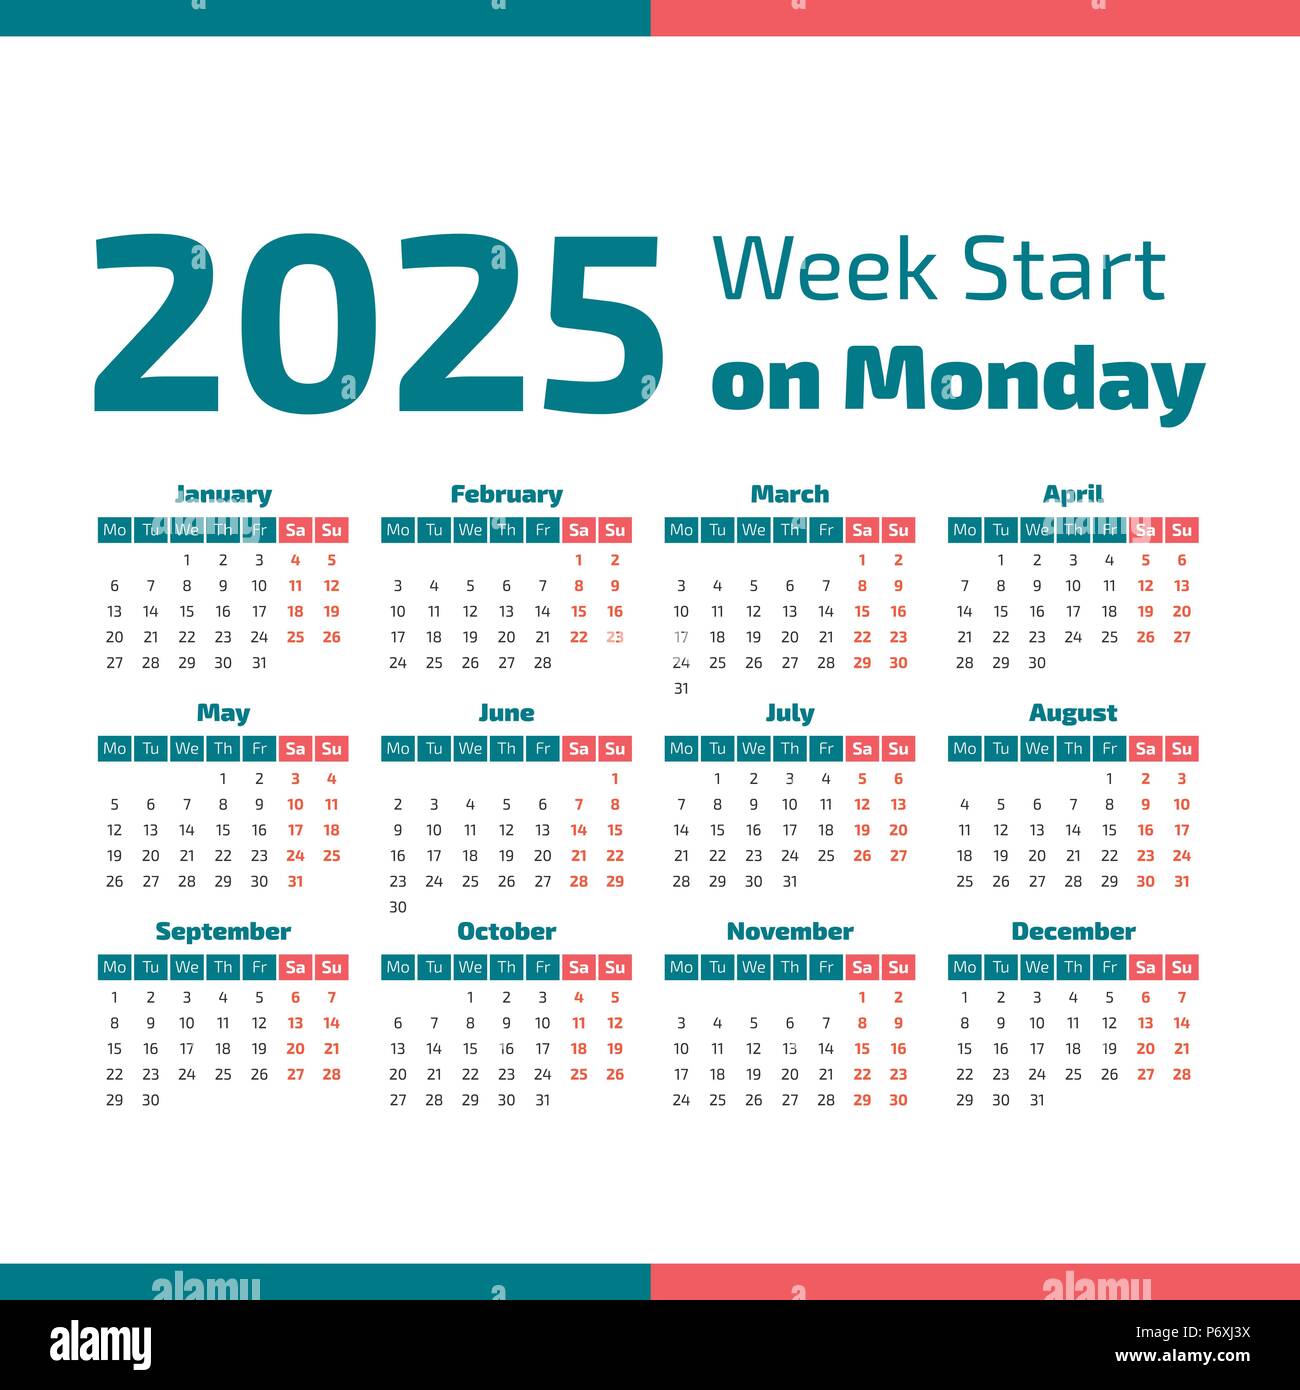 calendario-jun-2021-calendario-del-a-o-2025